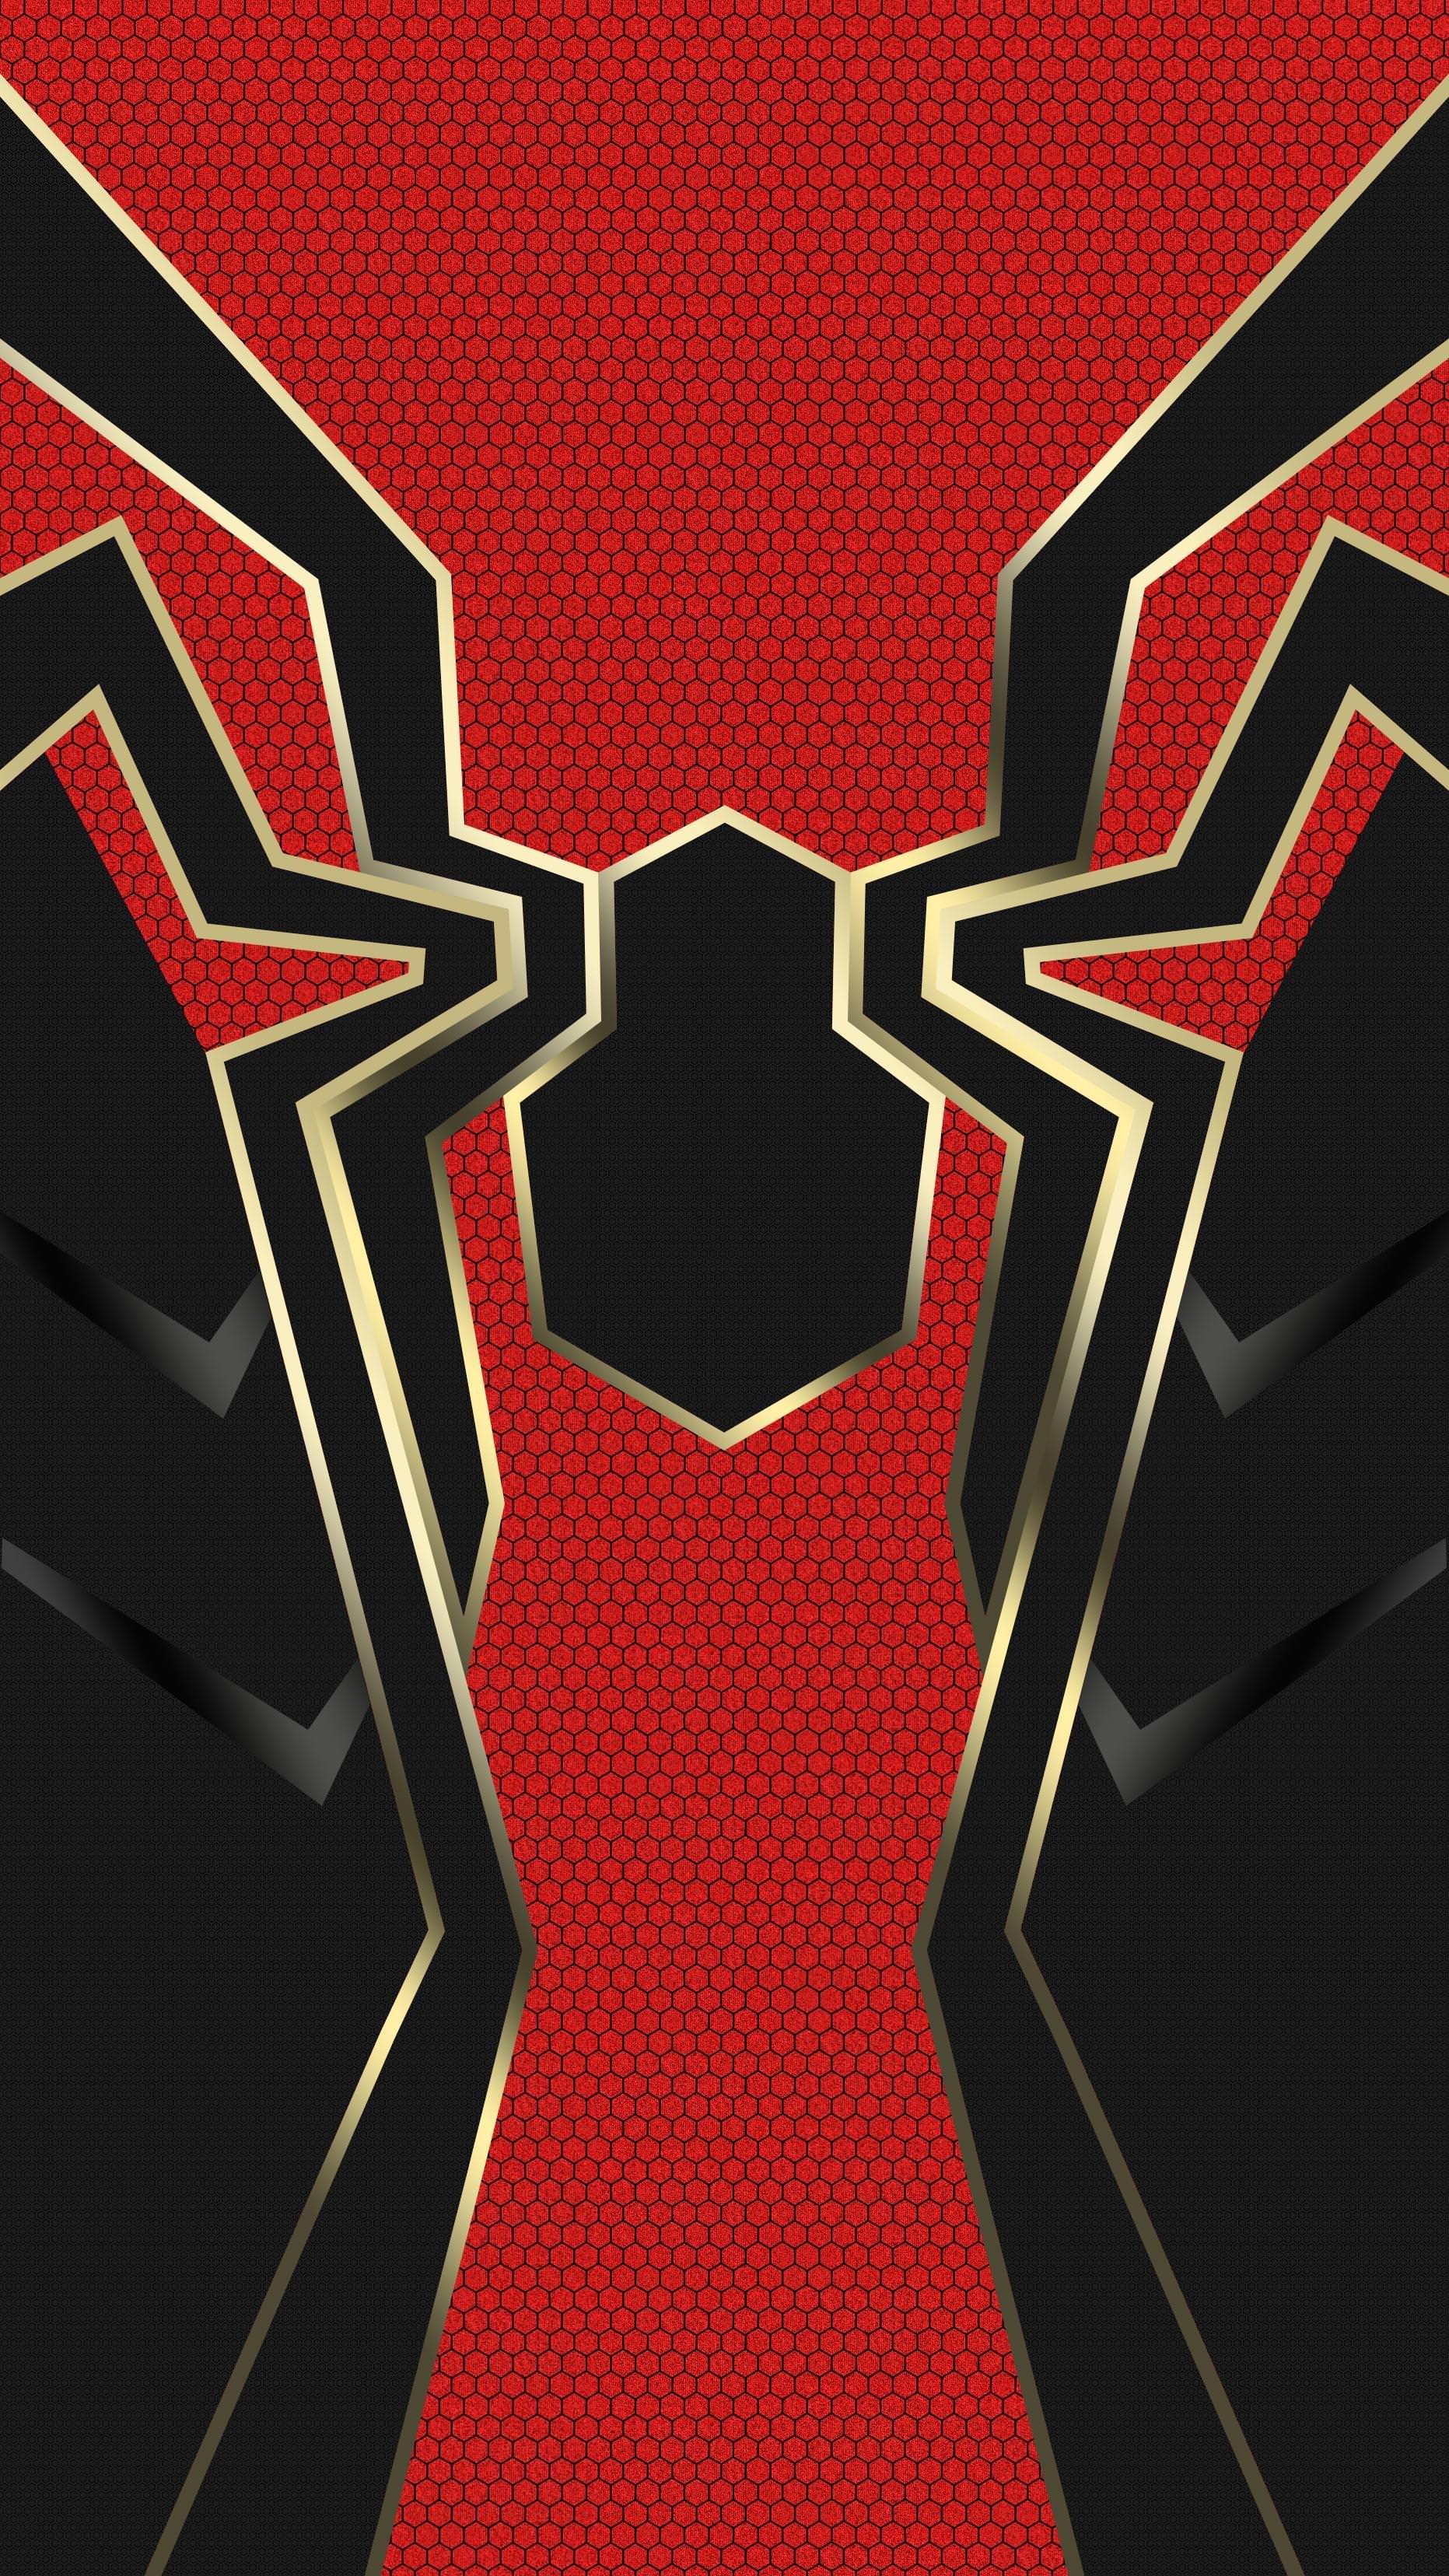 Iron Spider Man Logo